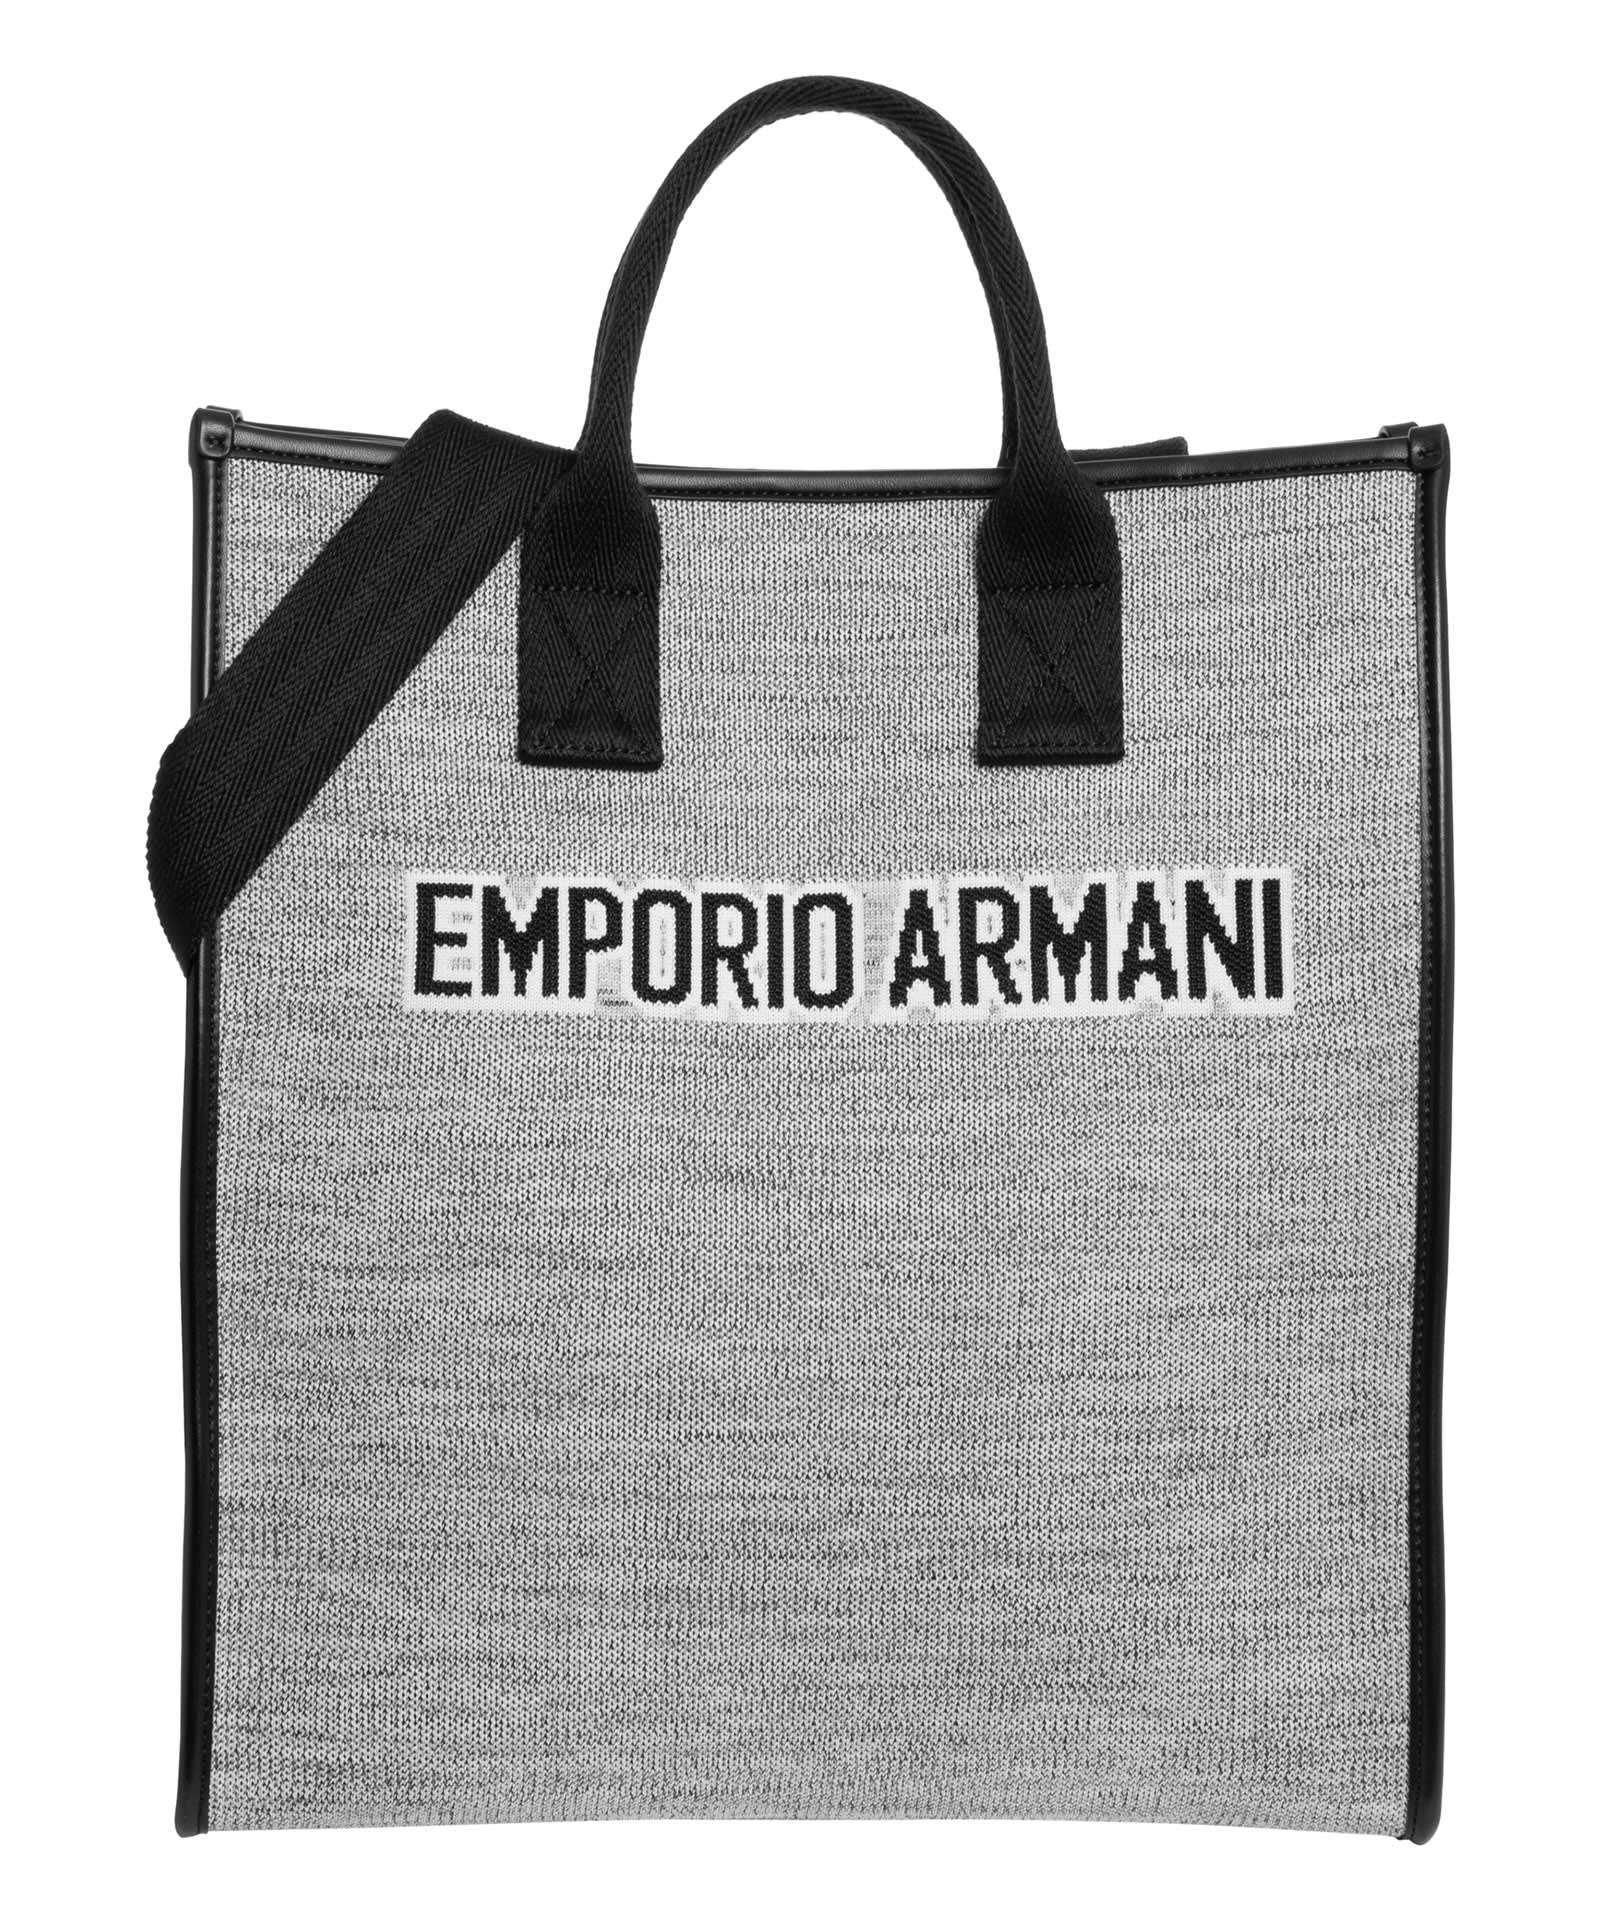 EMPORIO ARMANI TOTE BAG